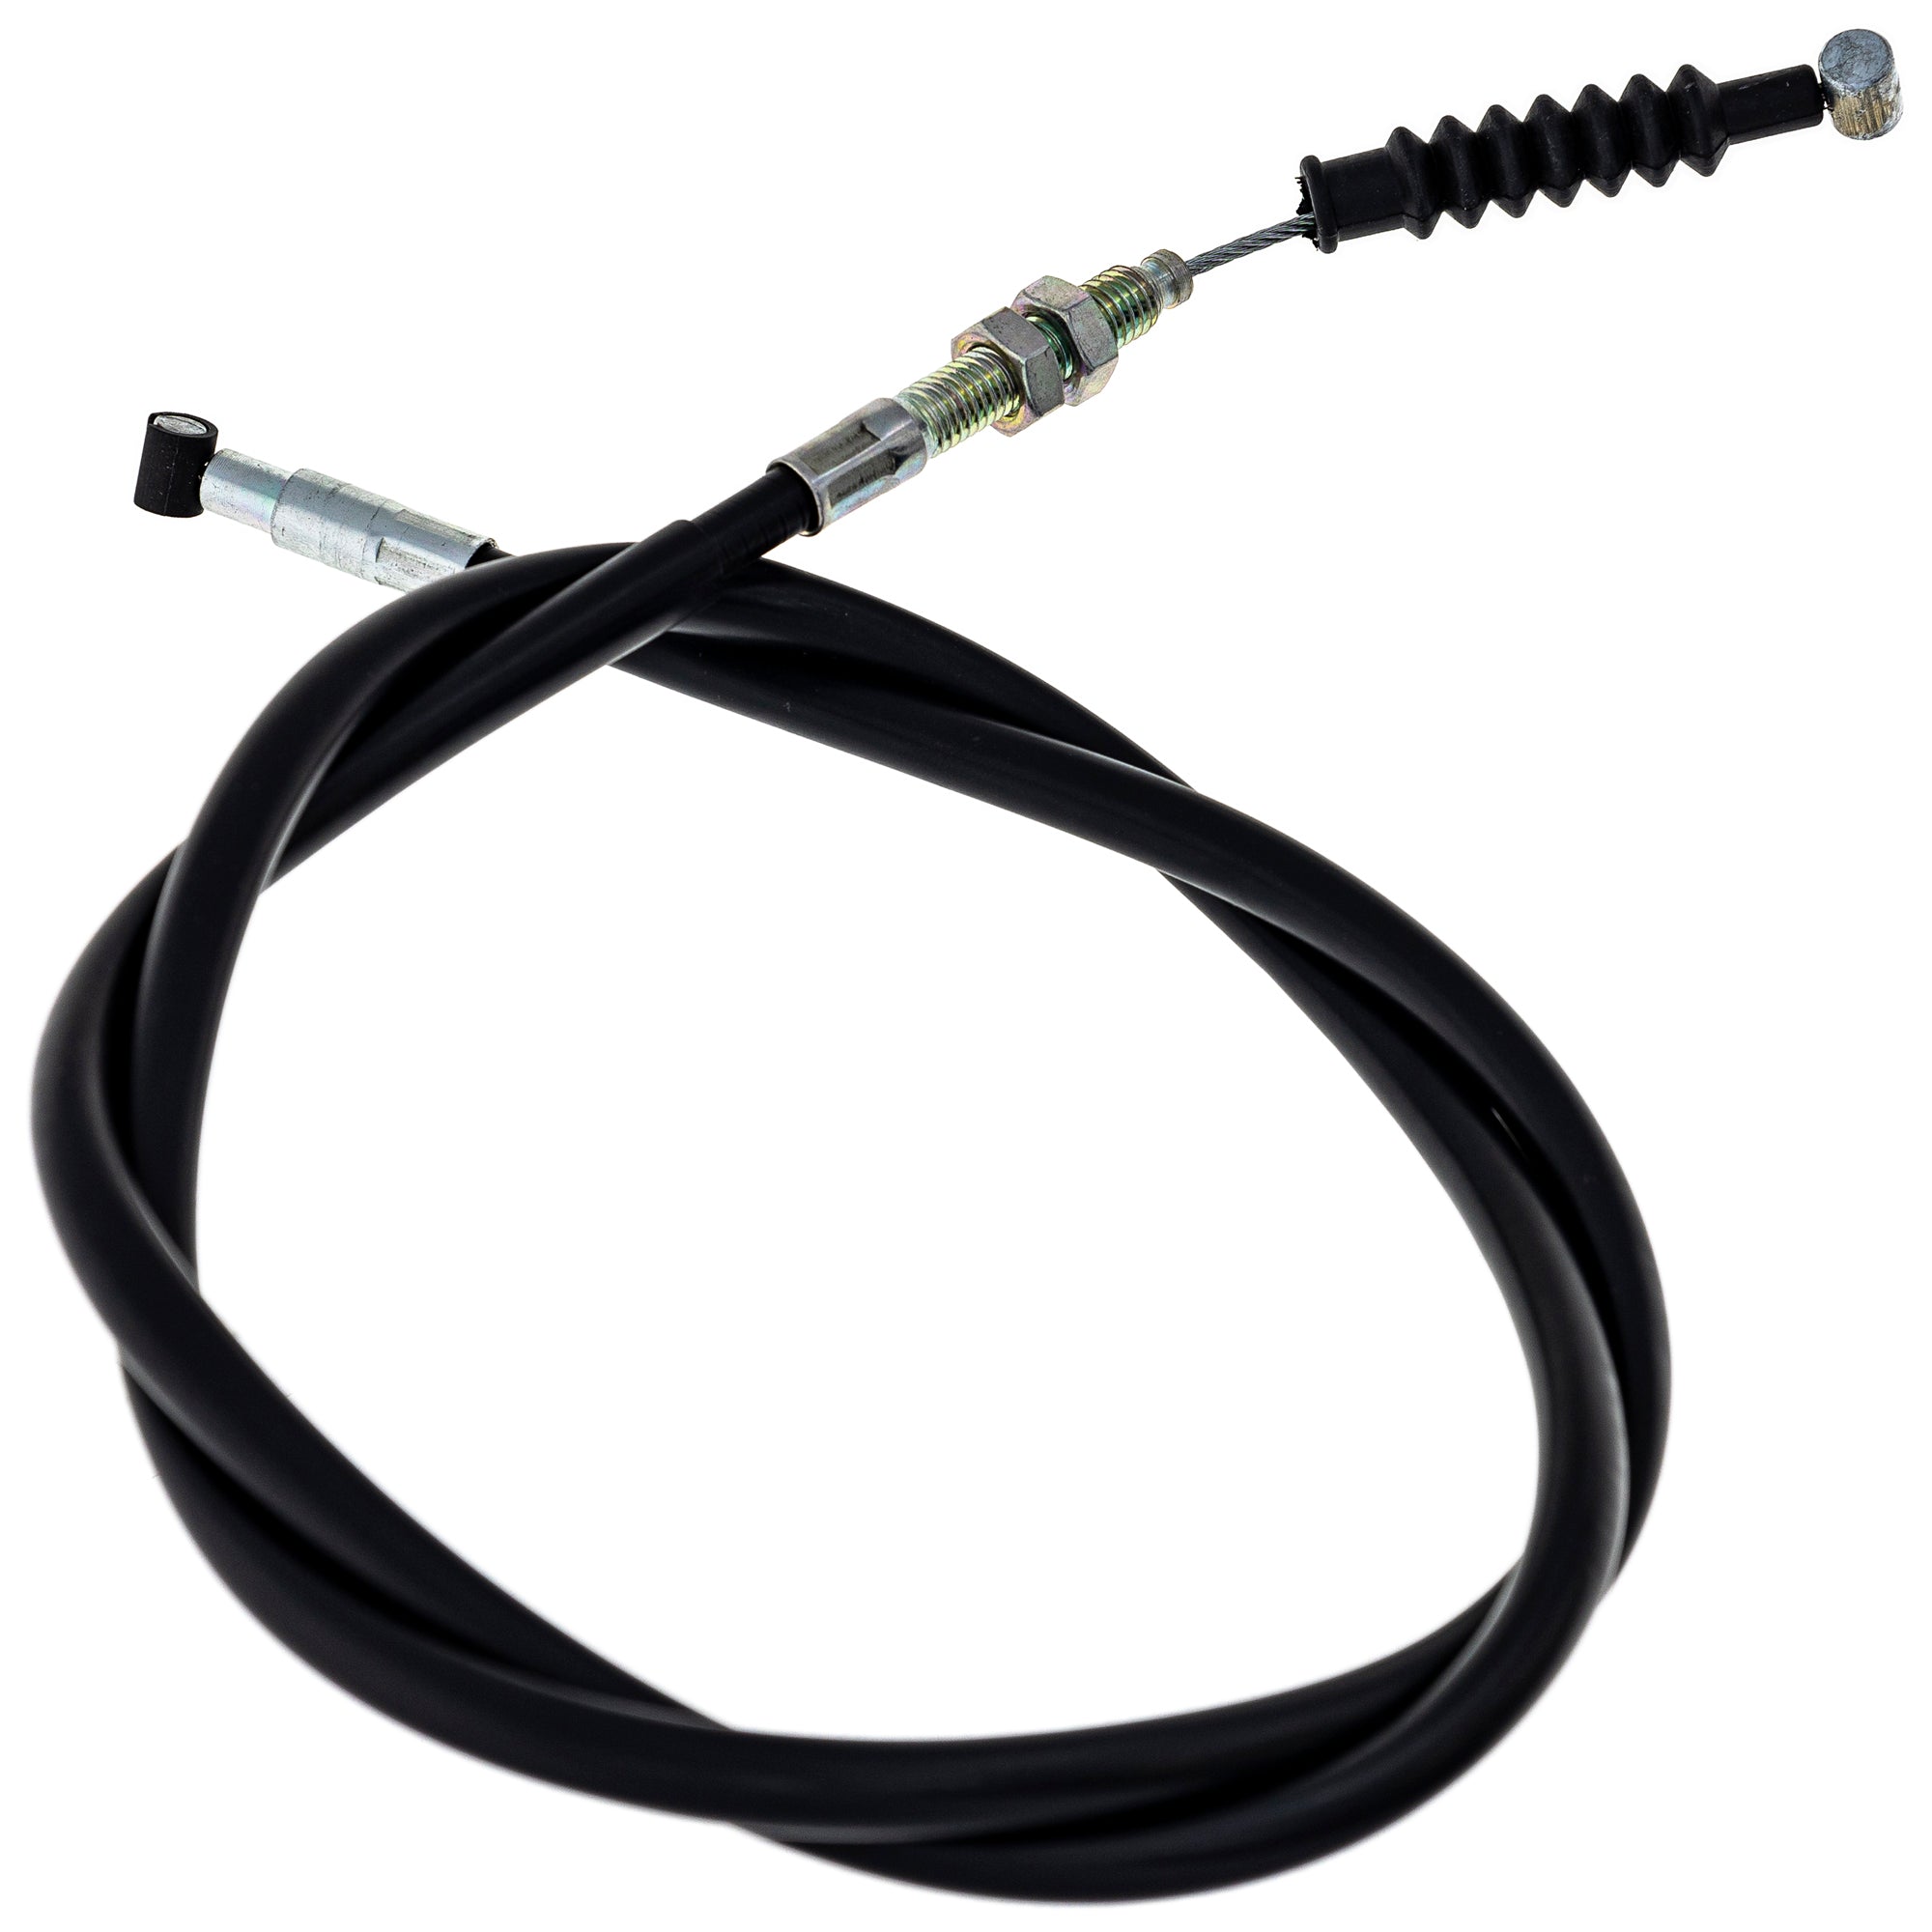 Clutch Cable for Yamaha WR250F 5UM-26335-E0-00 5UM-26335-00-00